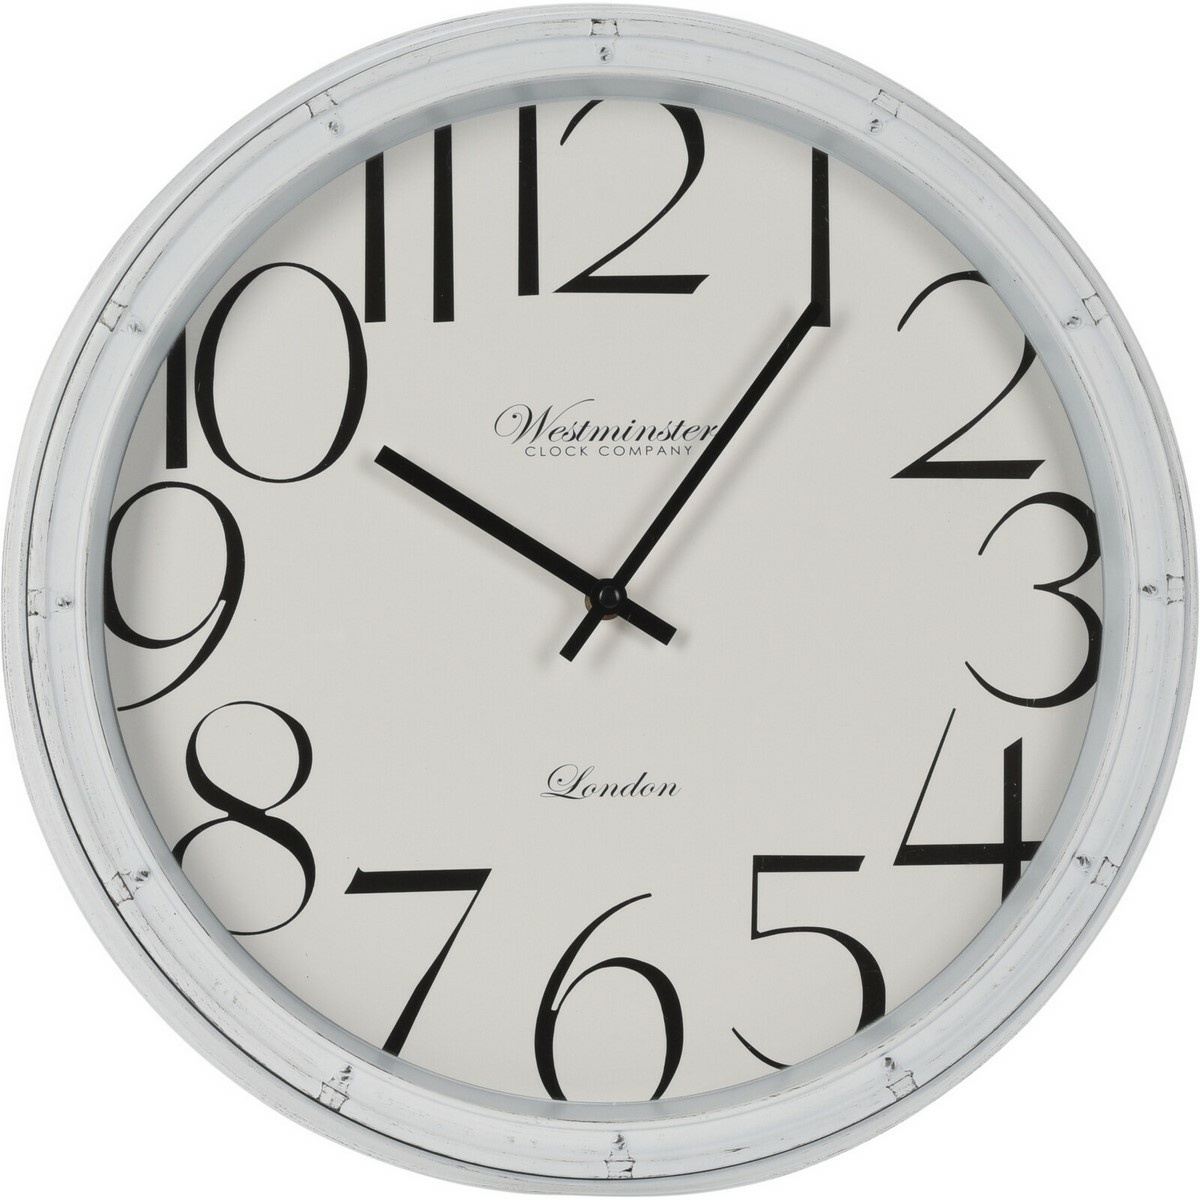 Nástěnné hodiny Westminster, 40 x 4,8 cm